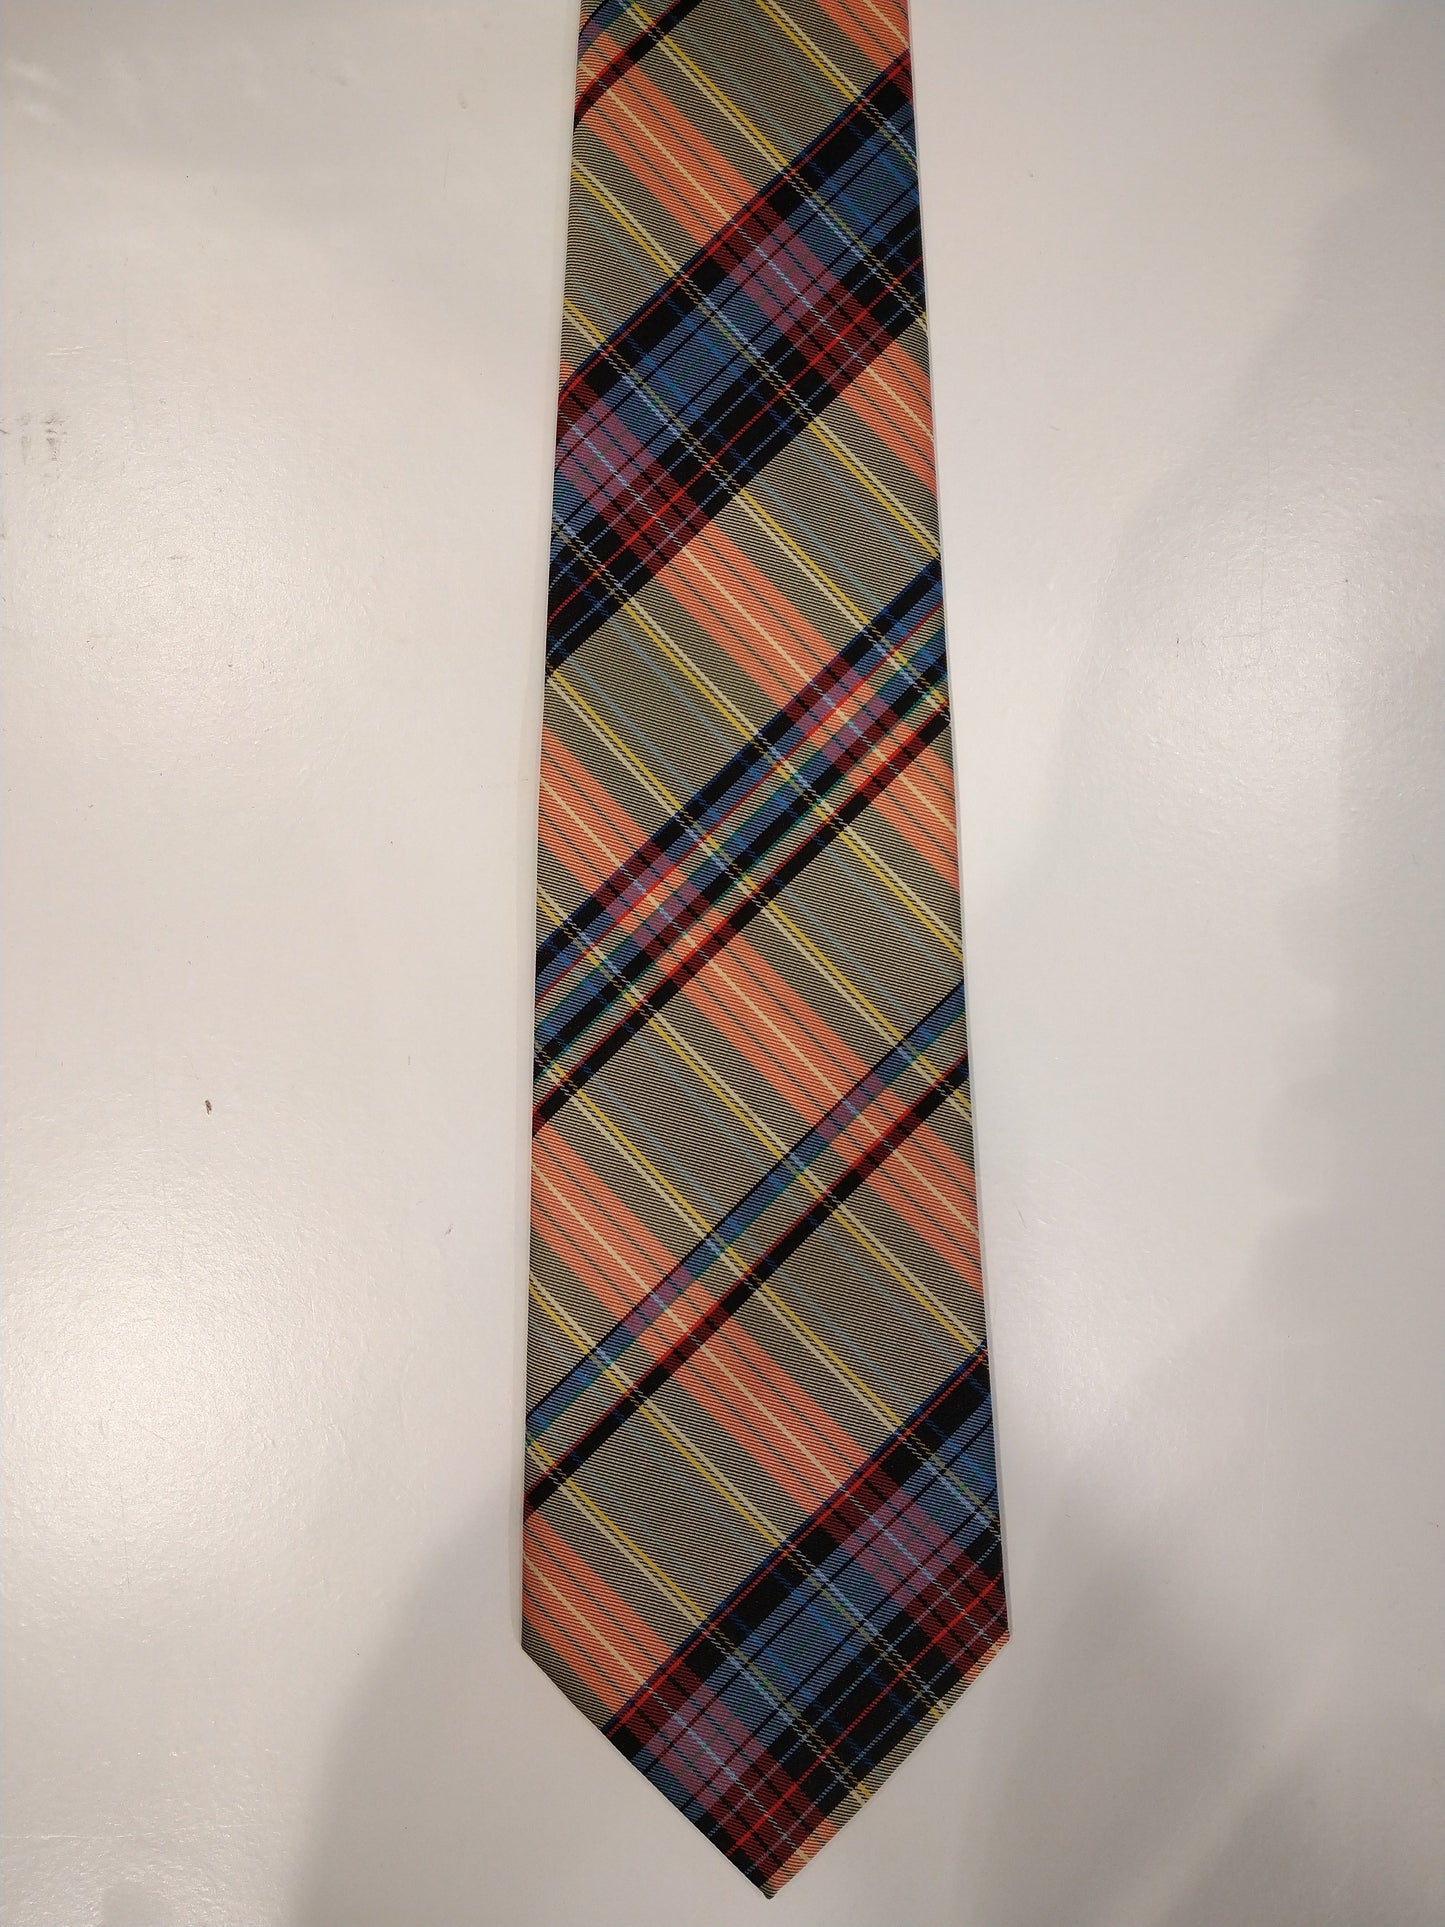 Colorido corbata de poliéster a cuadros Michaelis.